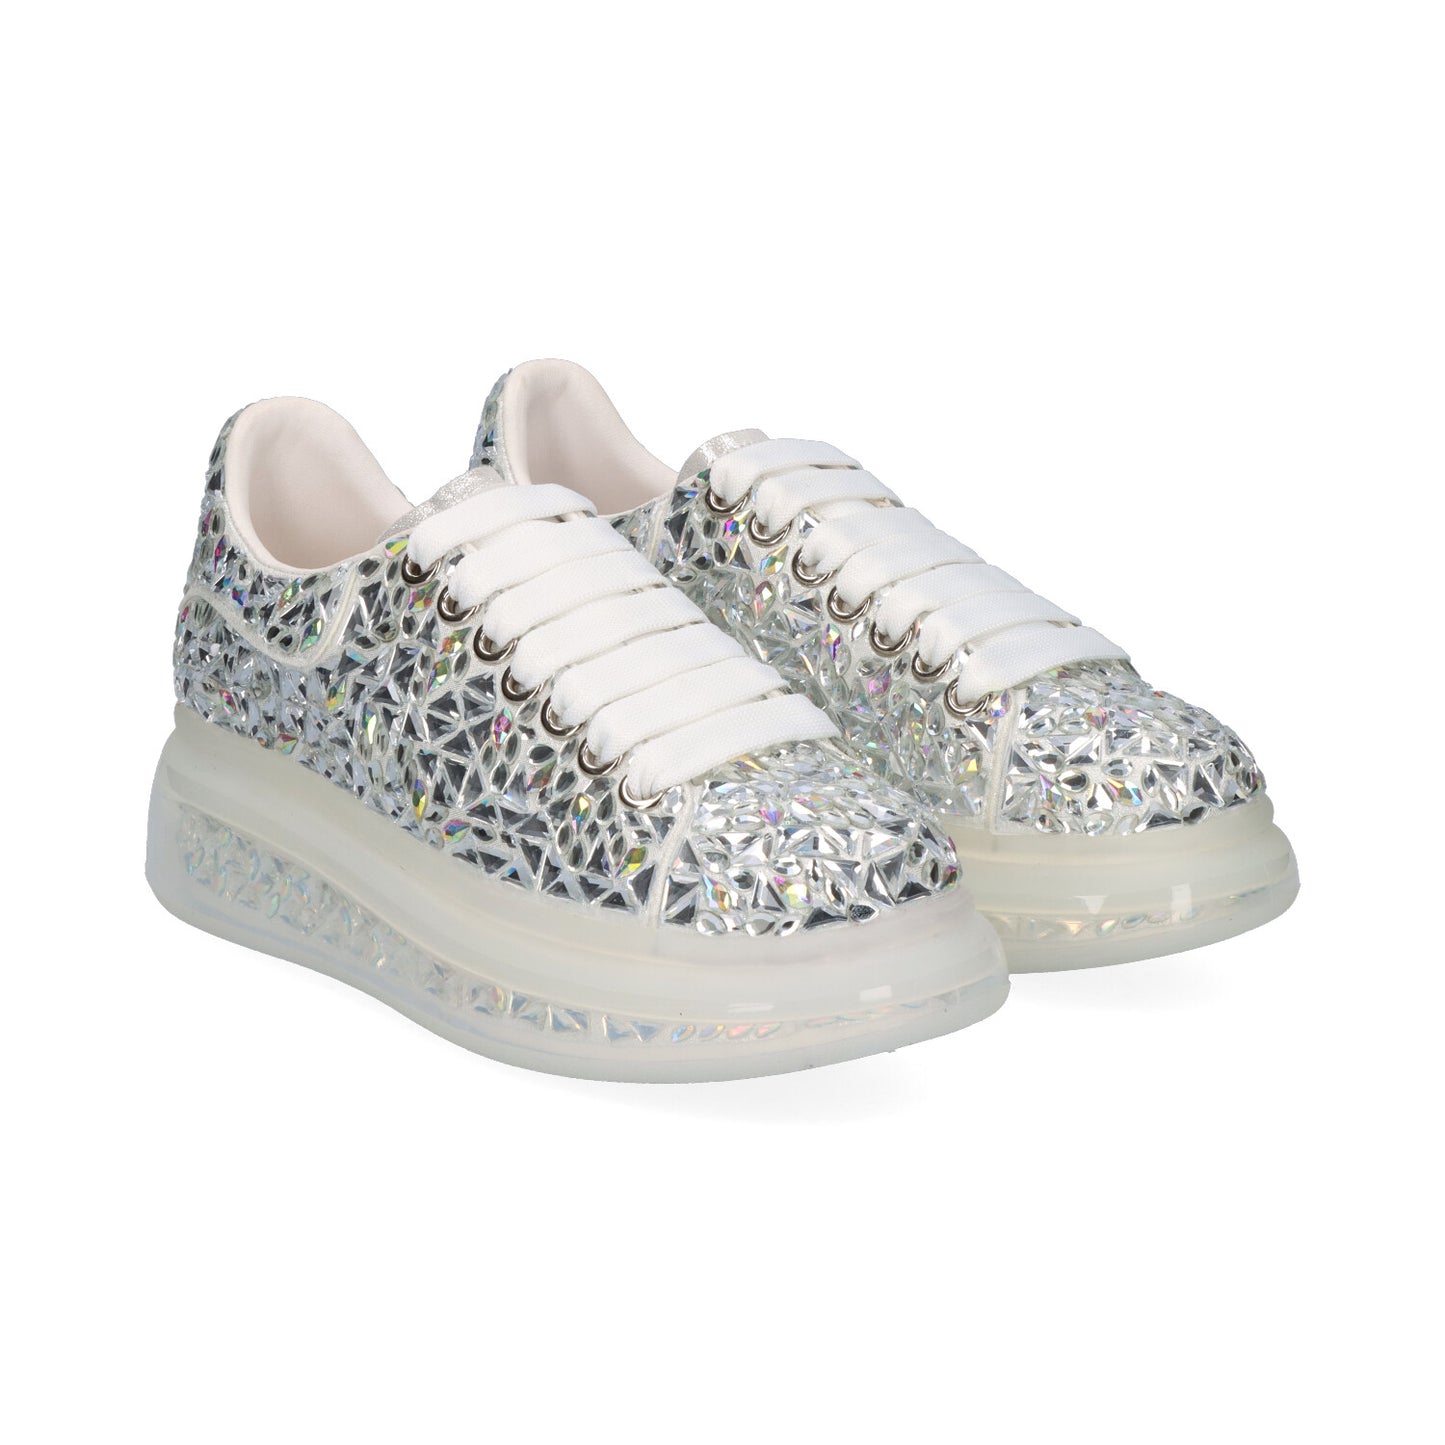 Sneakers Blancas de Cristales